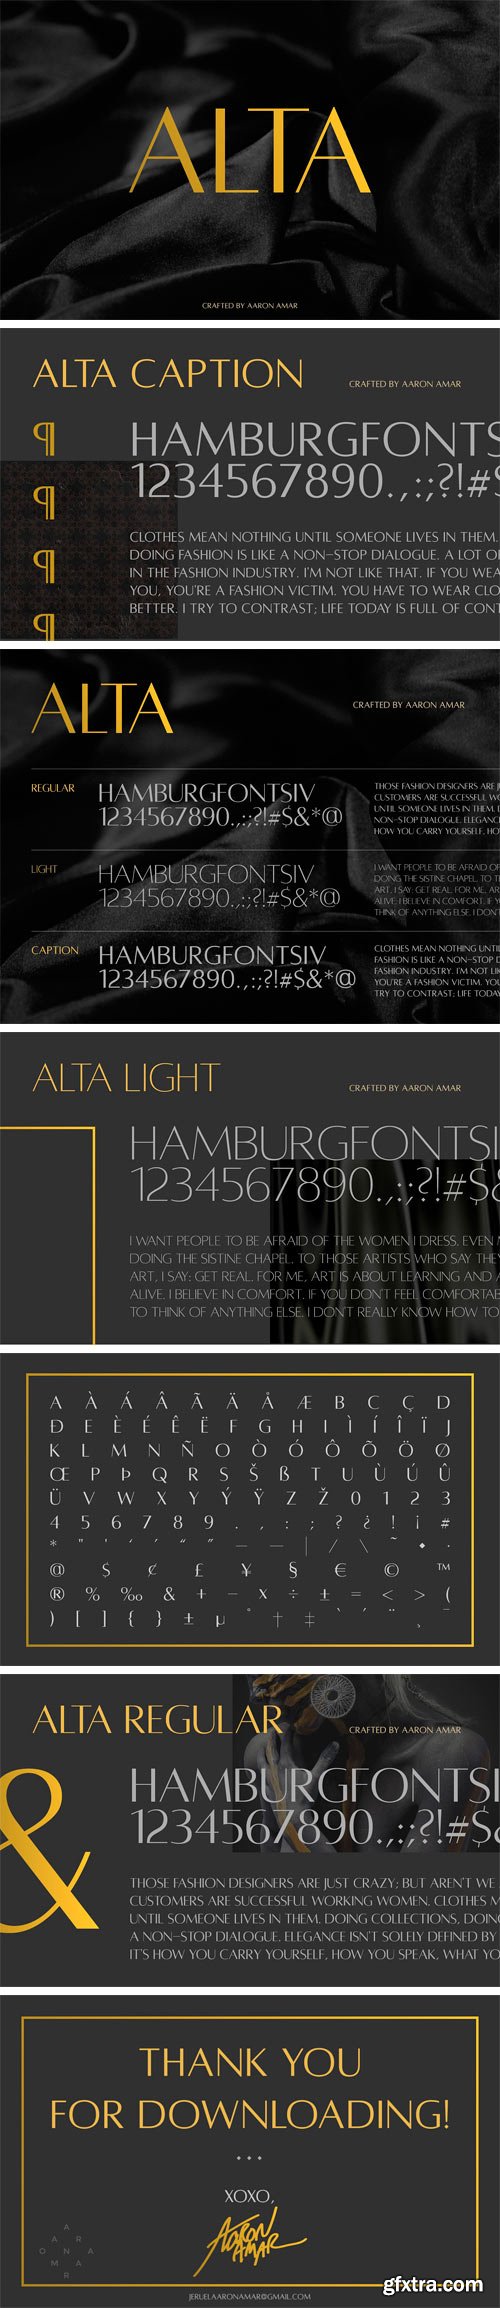 CM 1434641 - Alta Typeface (3 Weights)